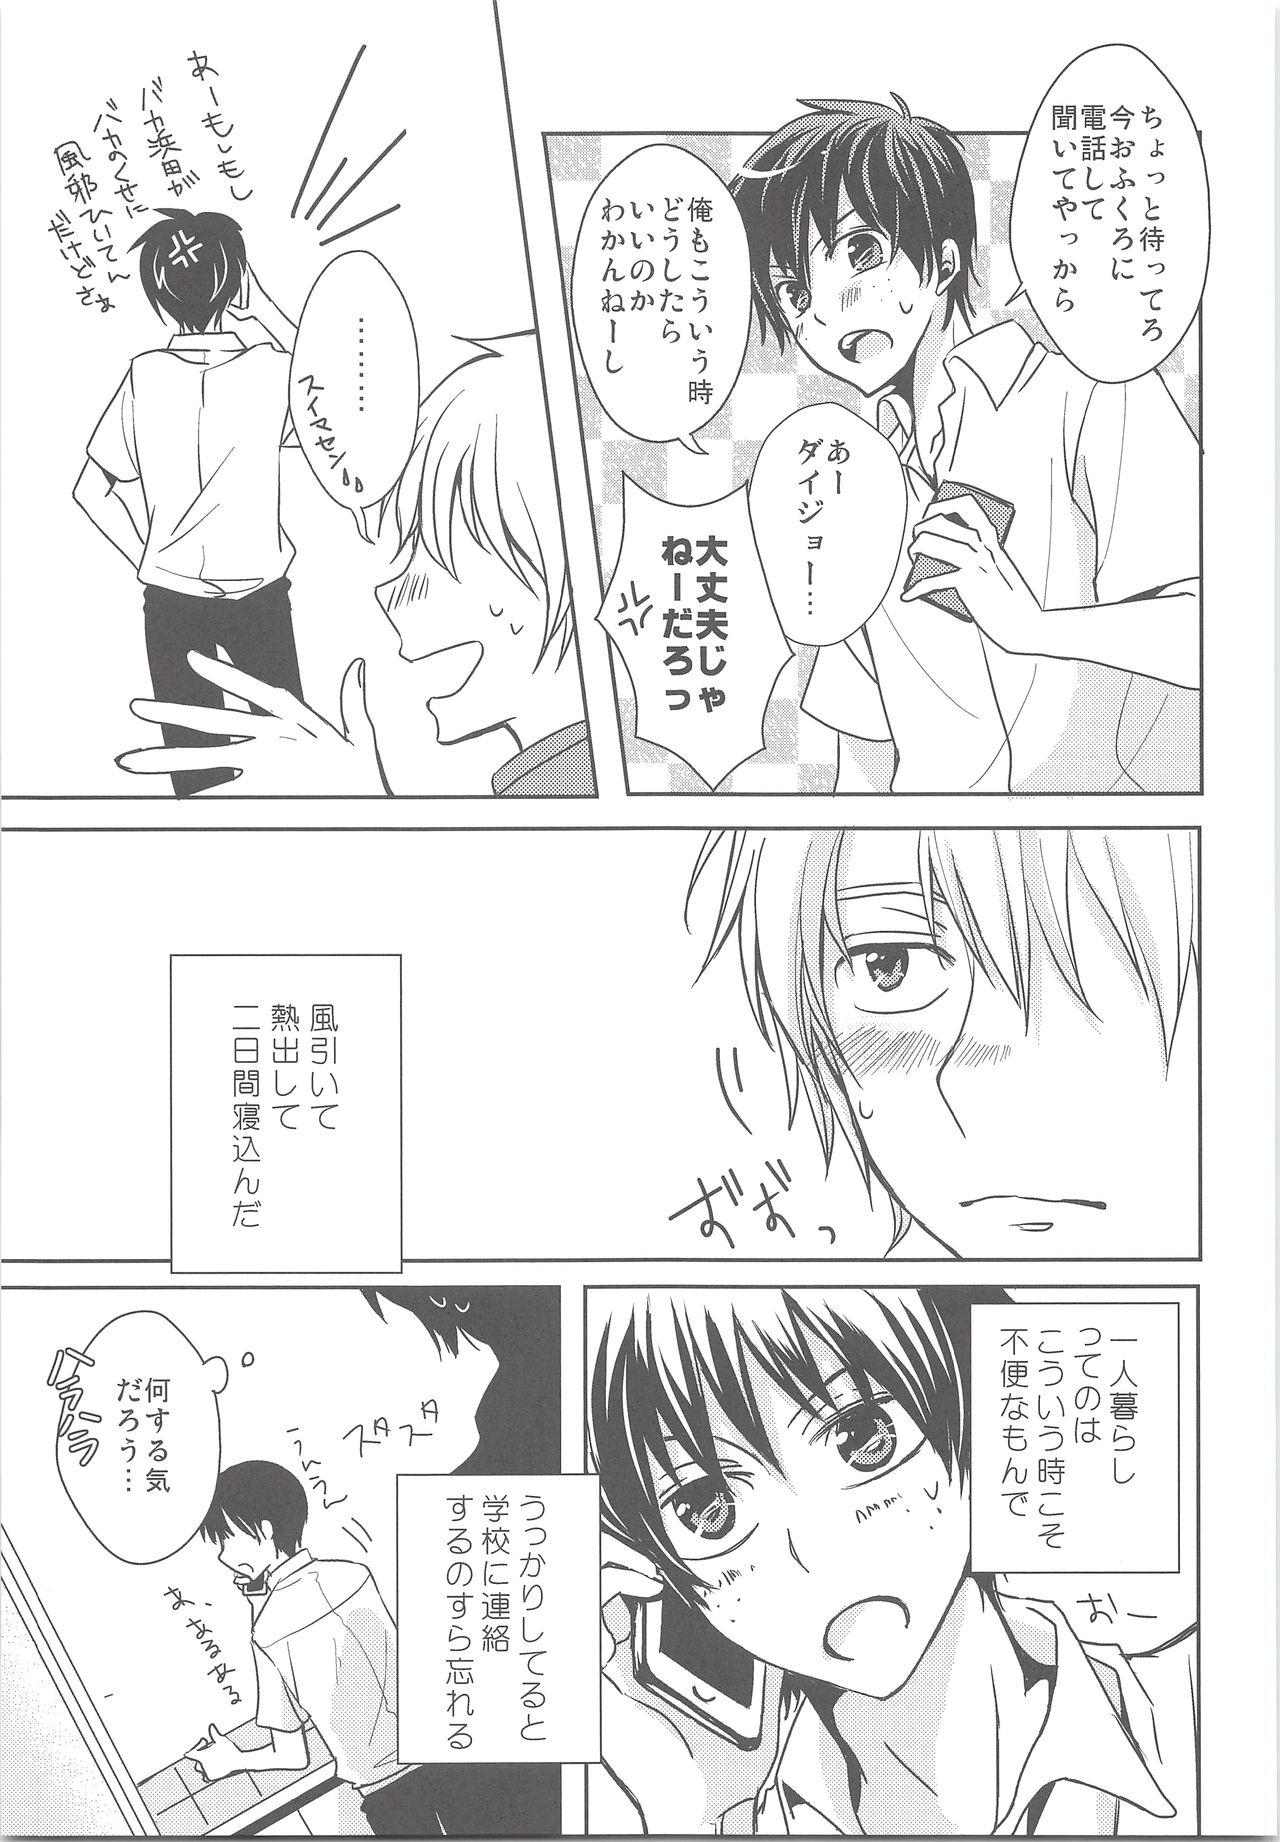 Fresh Natsu Kaze wa Baka ga Hiku! - Ookiku furikabutte 8teen - Page 6